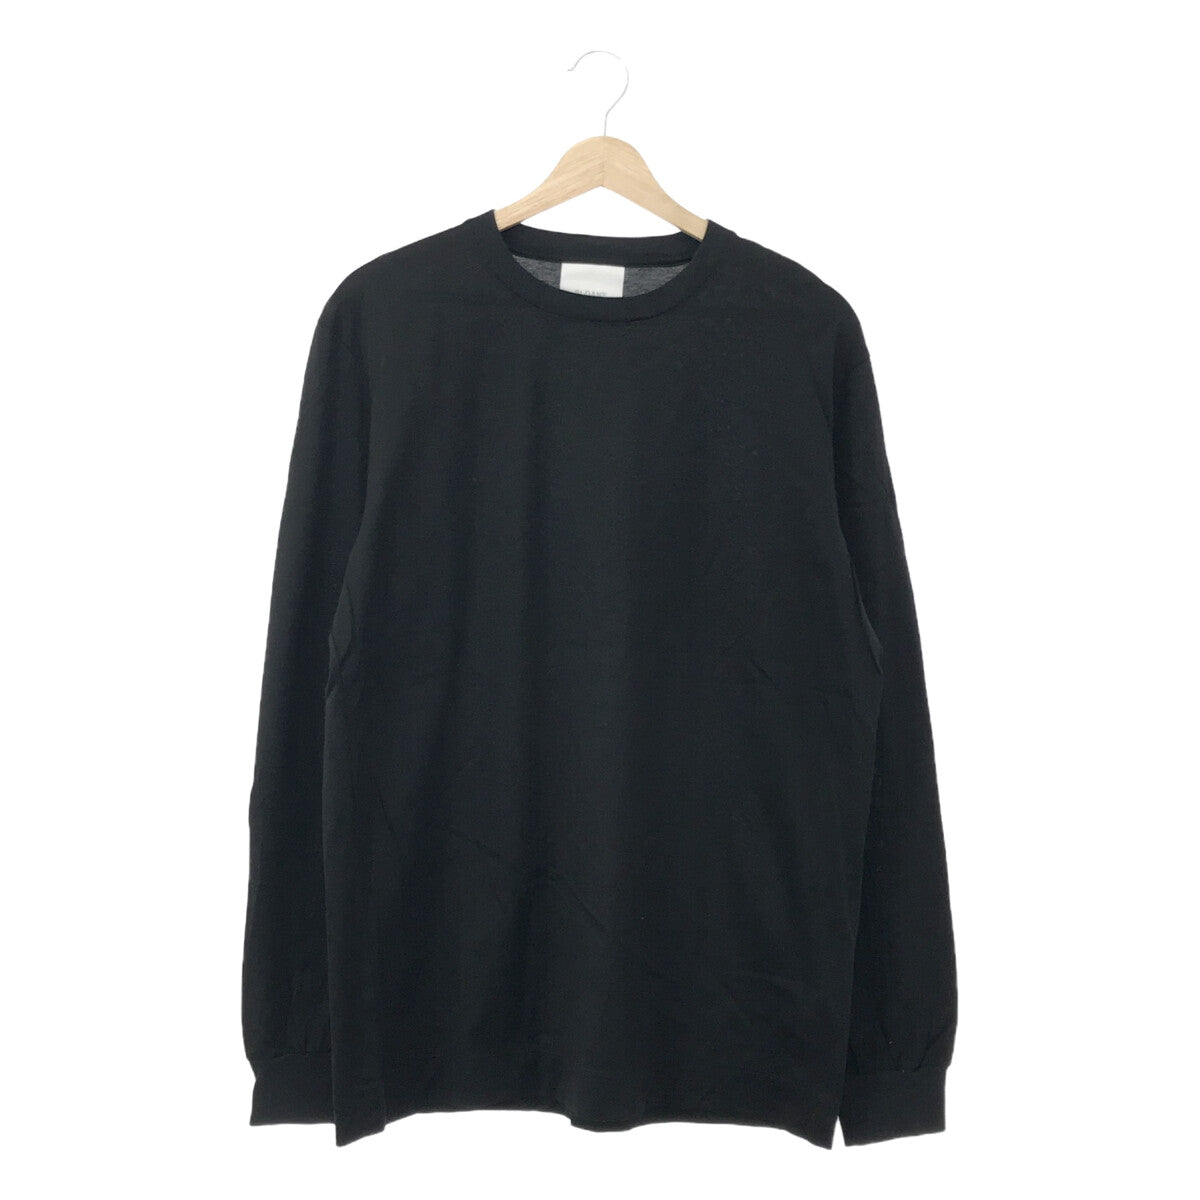 SLOANE / スローン | 60/2 コットン天竺UV 長袖Tシャツ | 5 | ブラック | メンズ